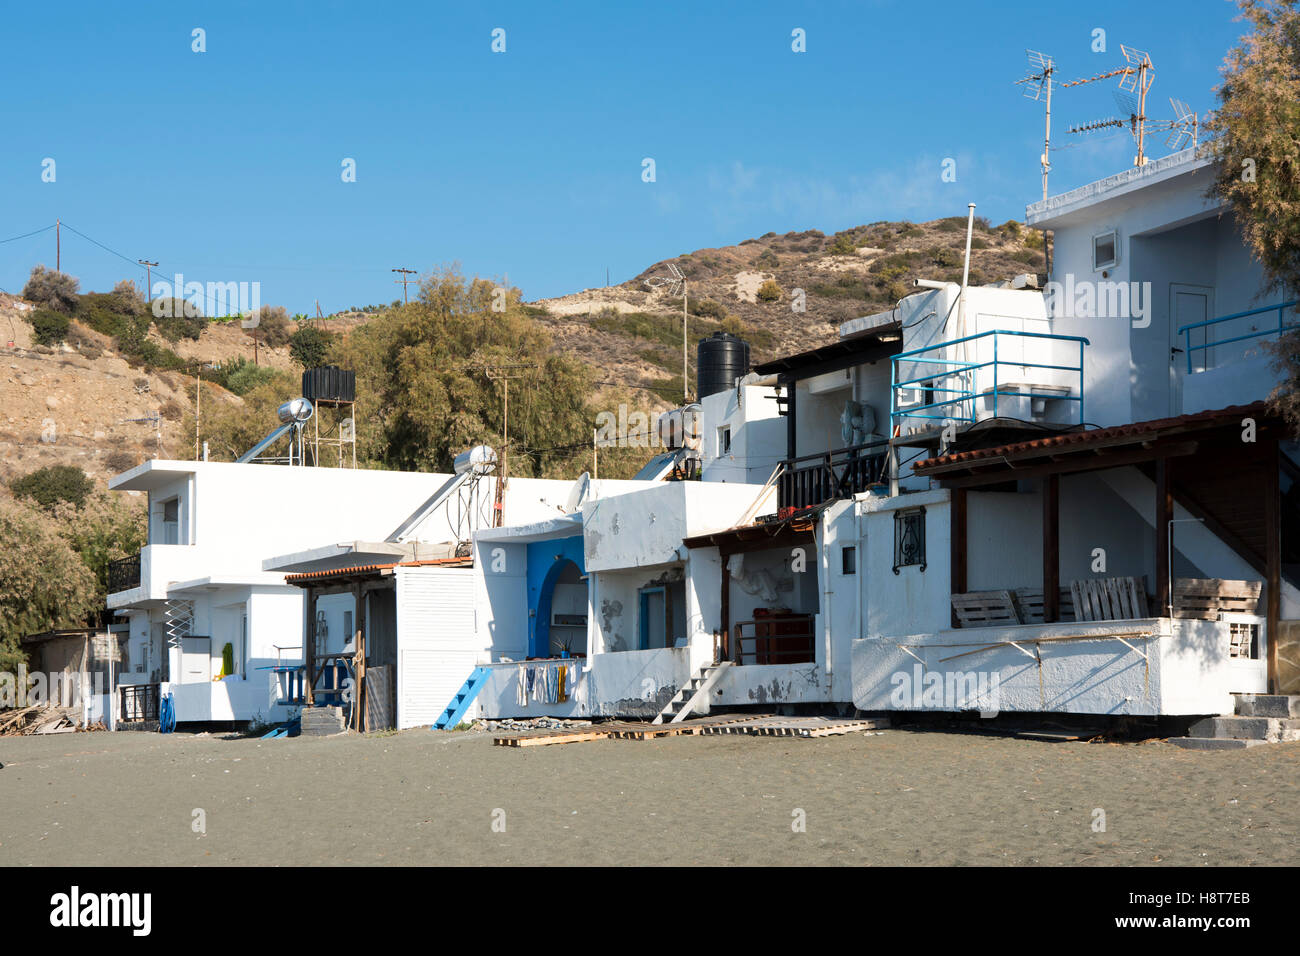 Greece, Crete, Terza westlich von Myrthos Stock Photo